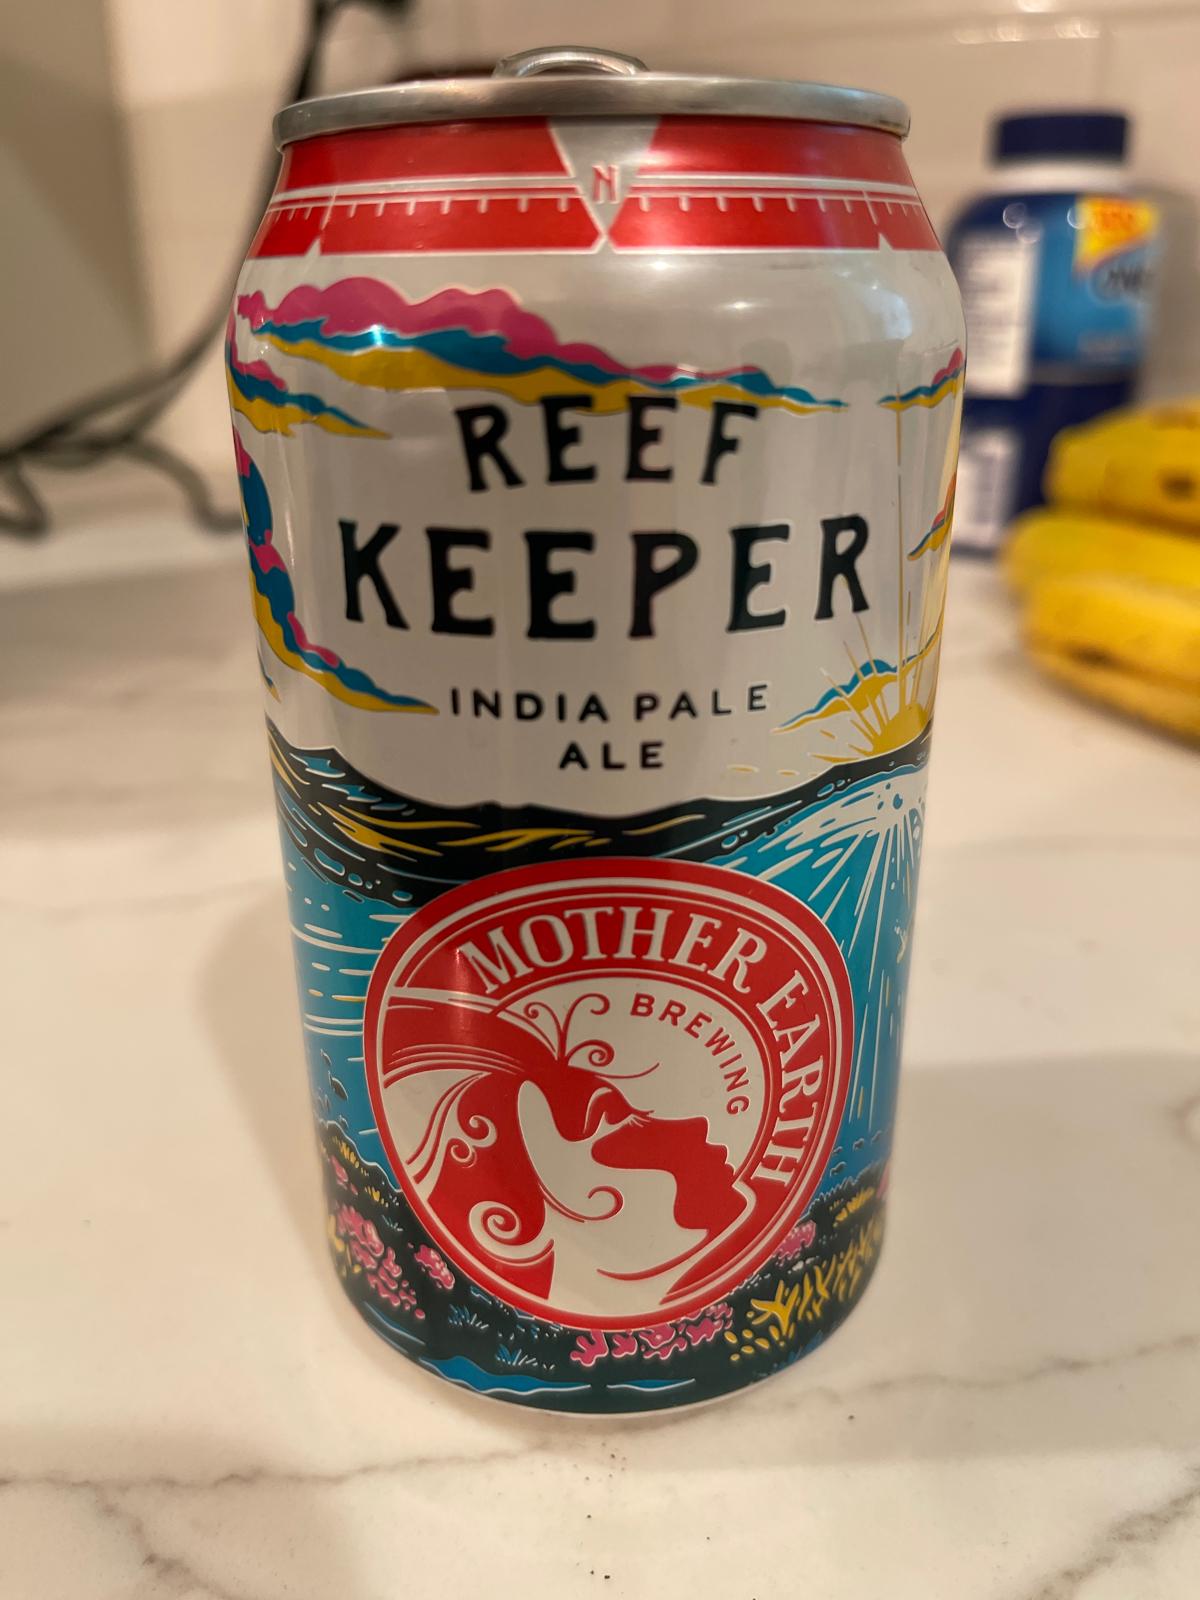 Reef Keeper